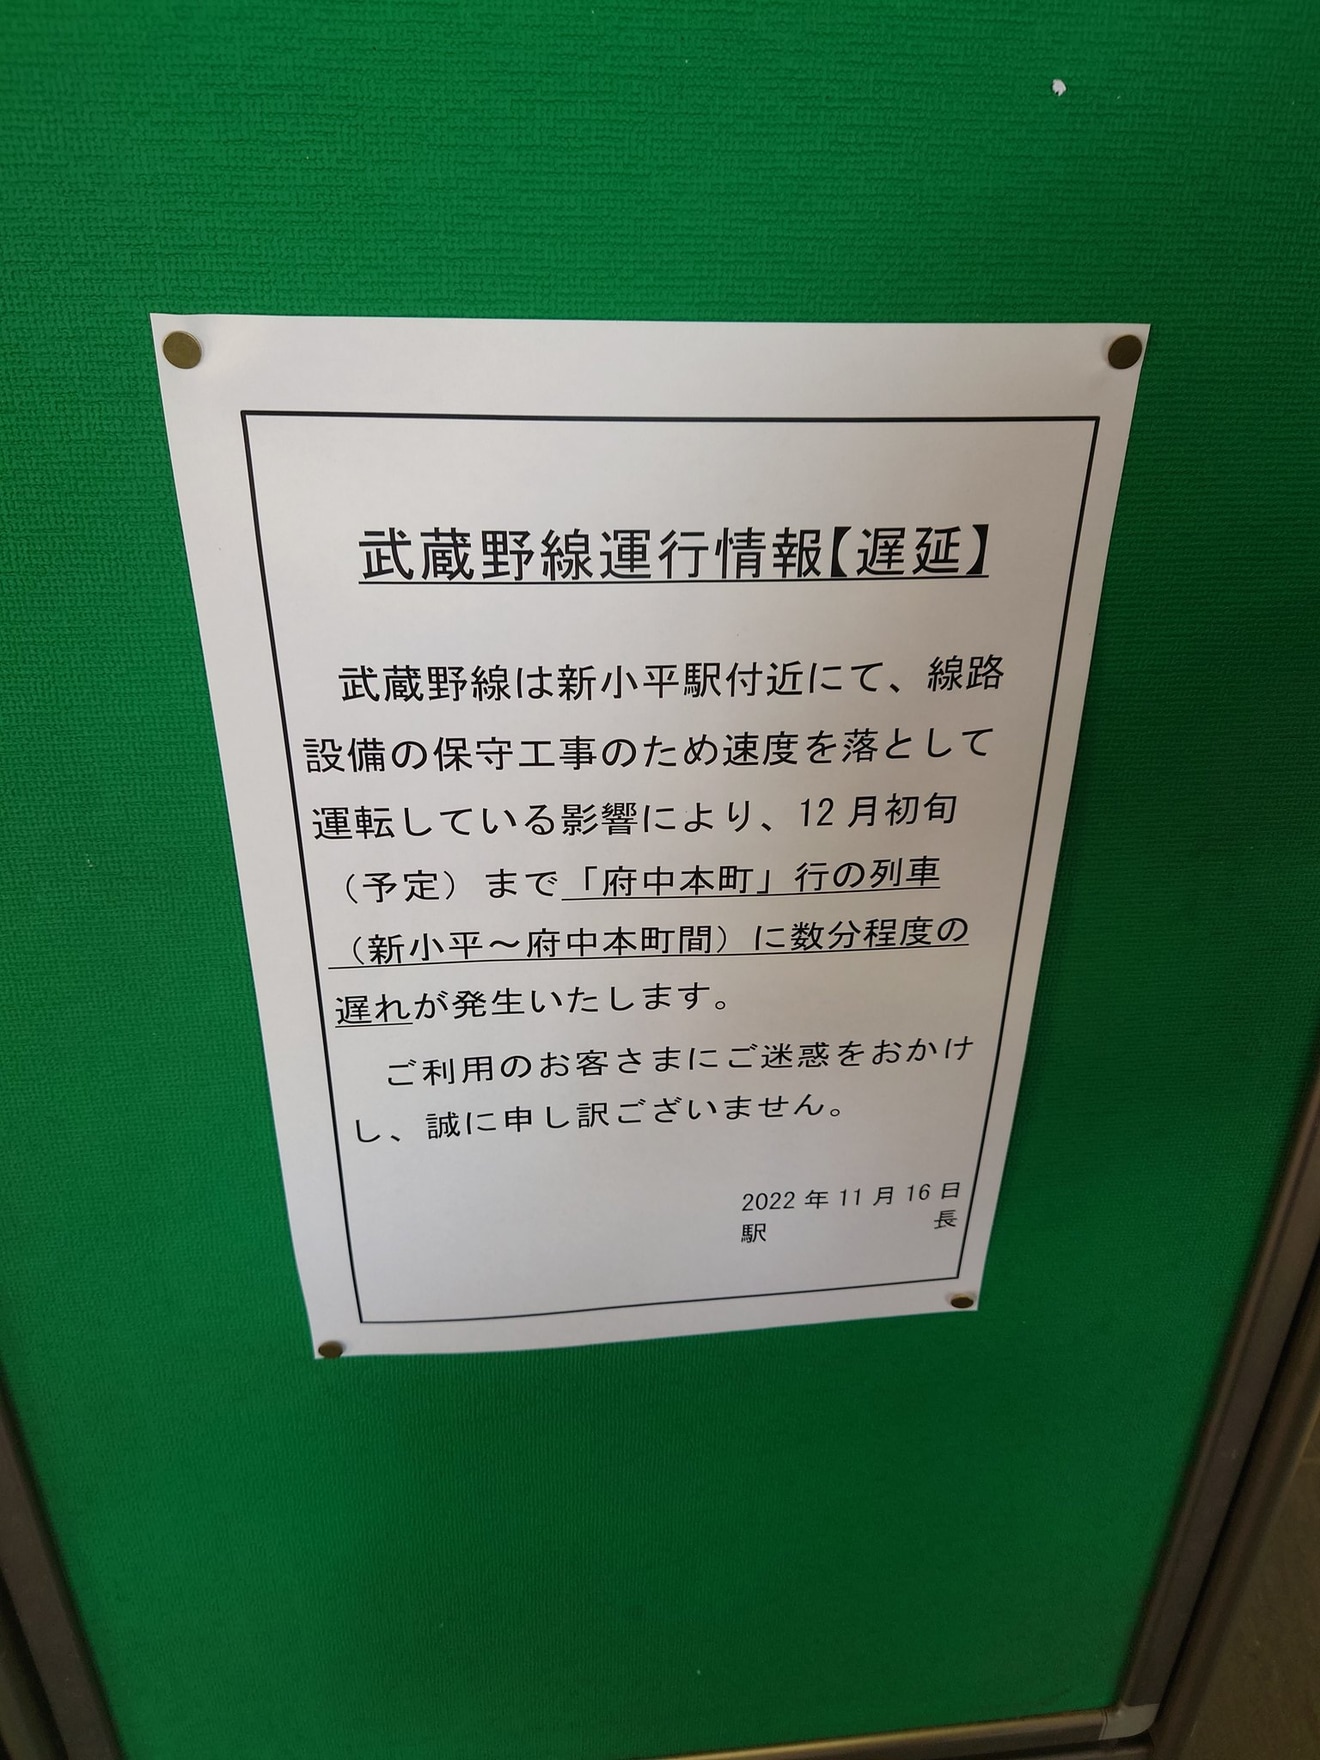 【JR東】武蔵野線上り新小平駅付近で徐行運転中の拡大写真